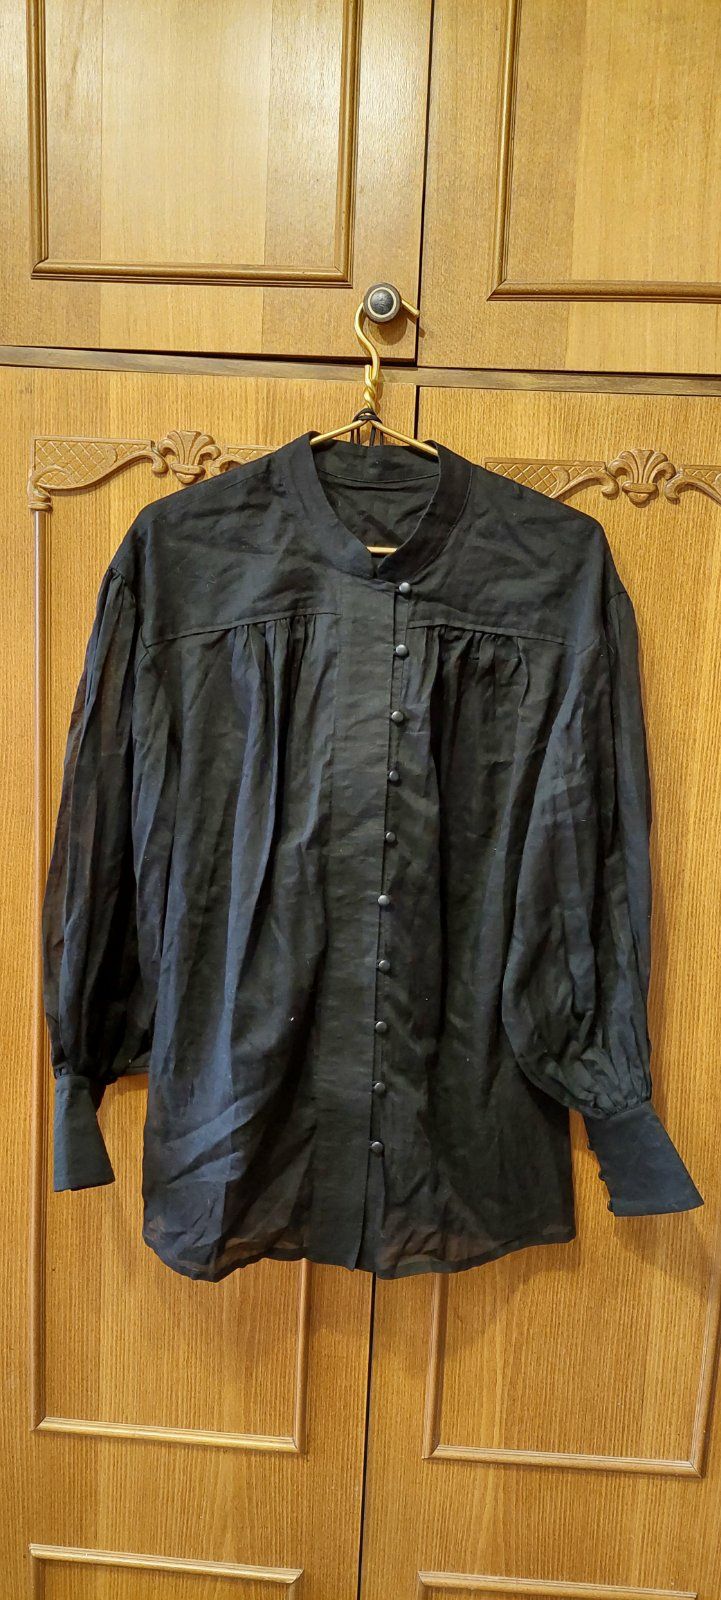 Лляна блуза, класична чорна